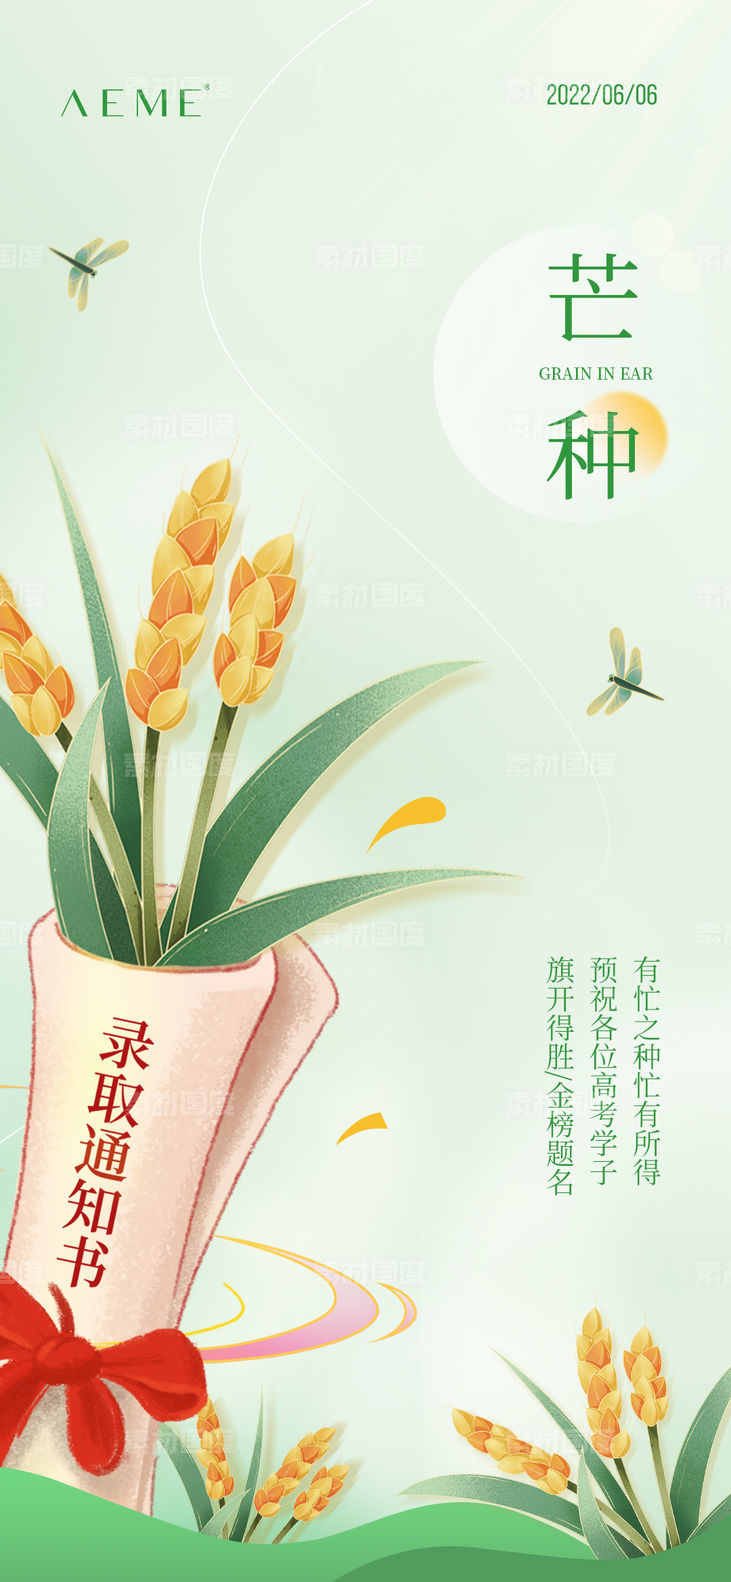 芒种简约风麦子高考传统节日节气海报